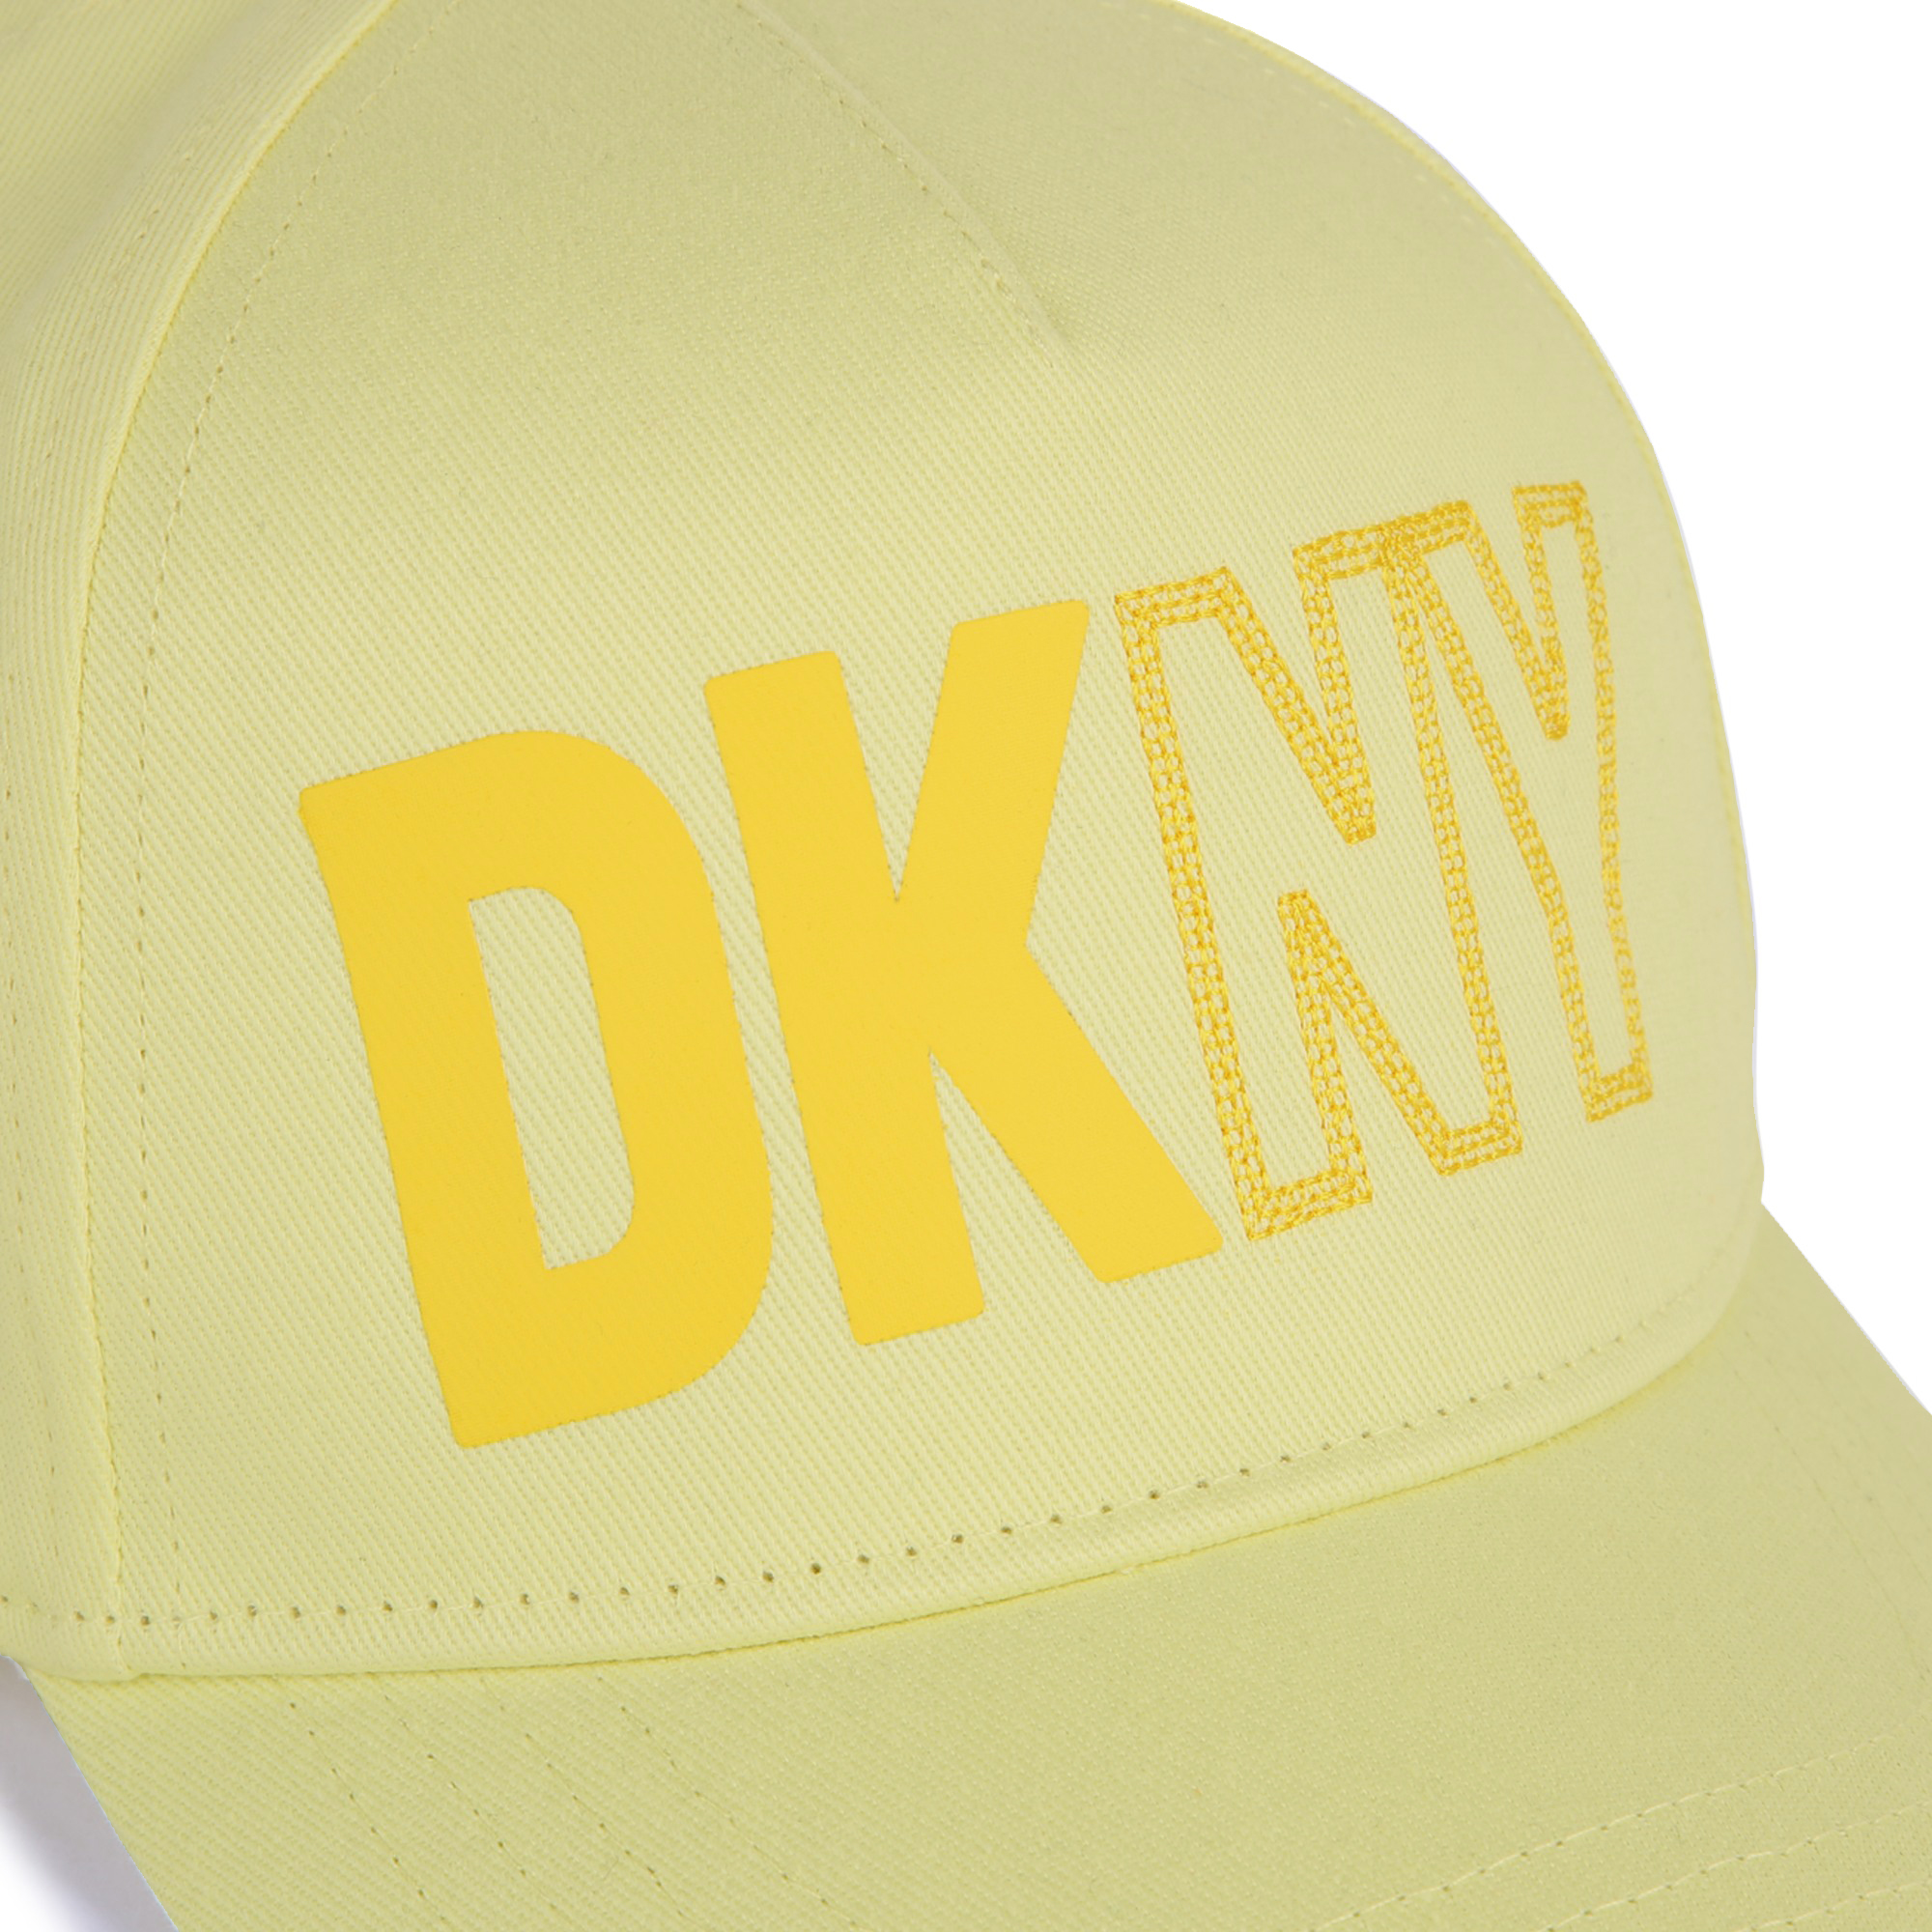 Katoenen pet met klittenband DKNY Voor